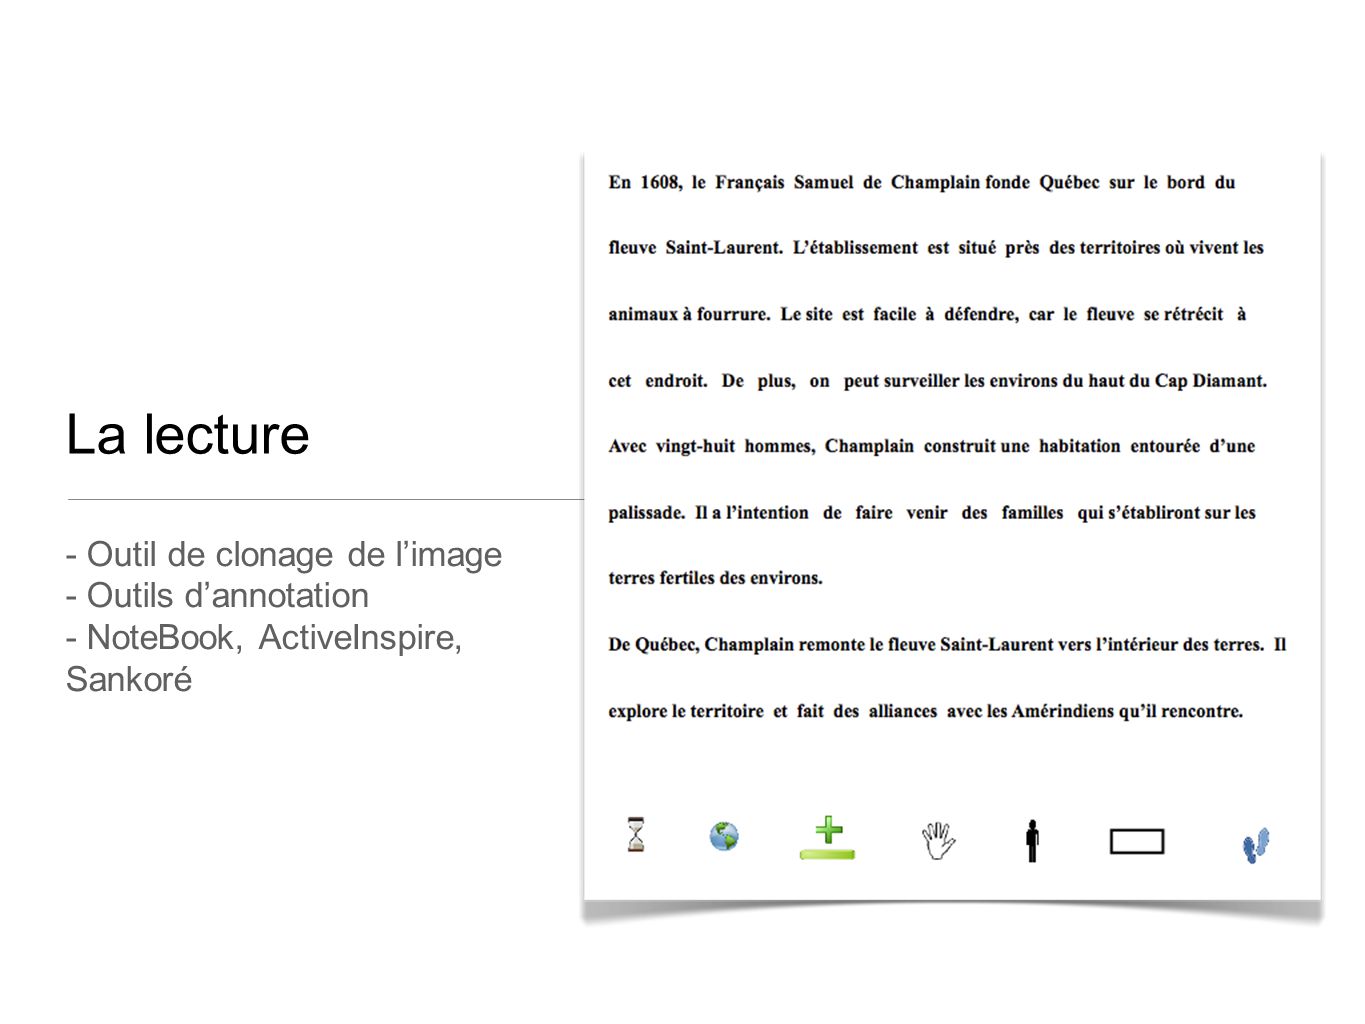 La lecture - Outil de clonage de l’image - Outils d’annotation - NoteBook, ActiveInspire, Sankoré